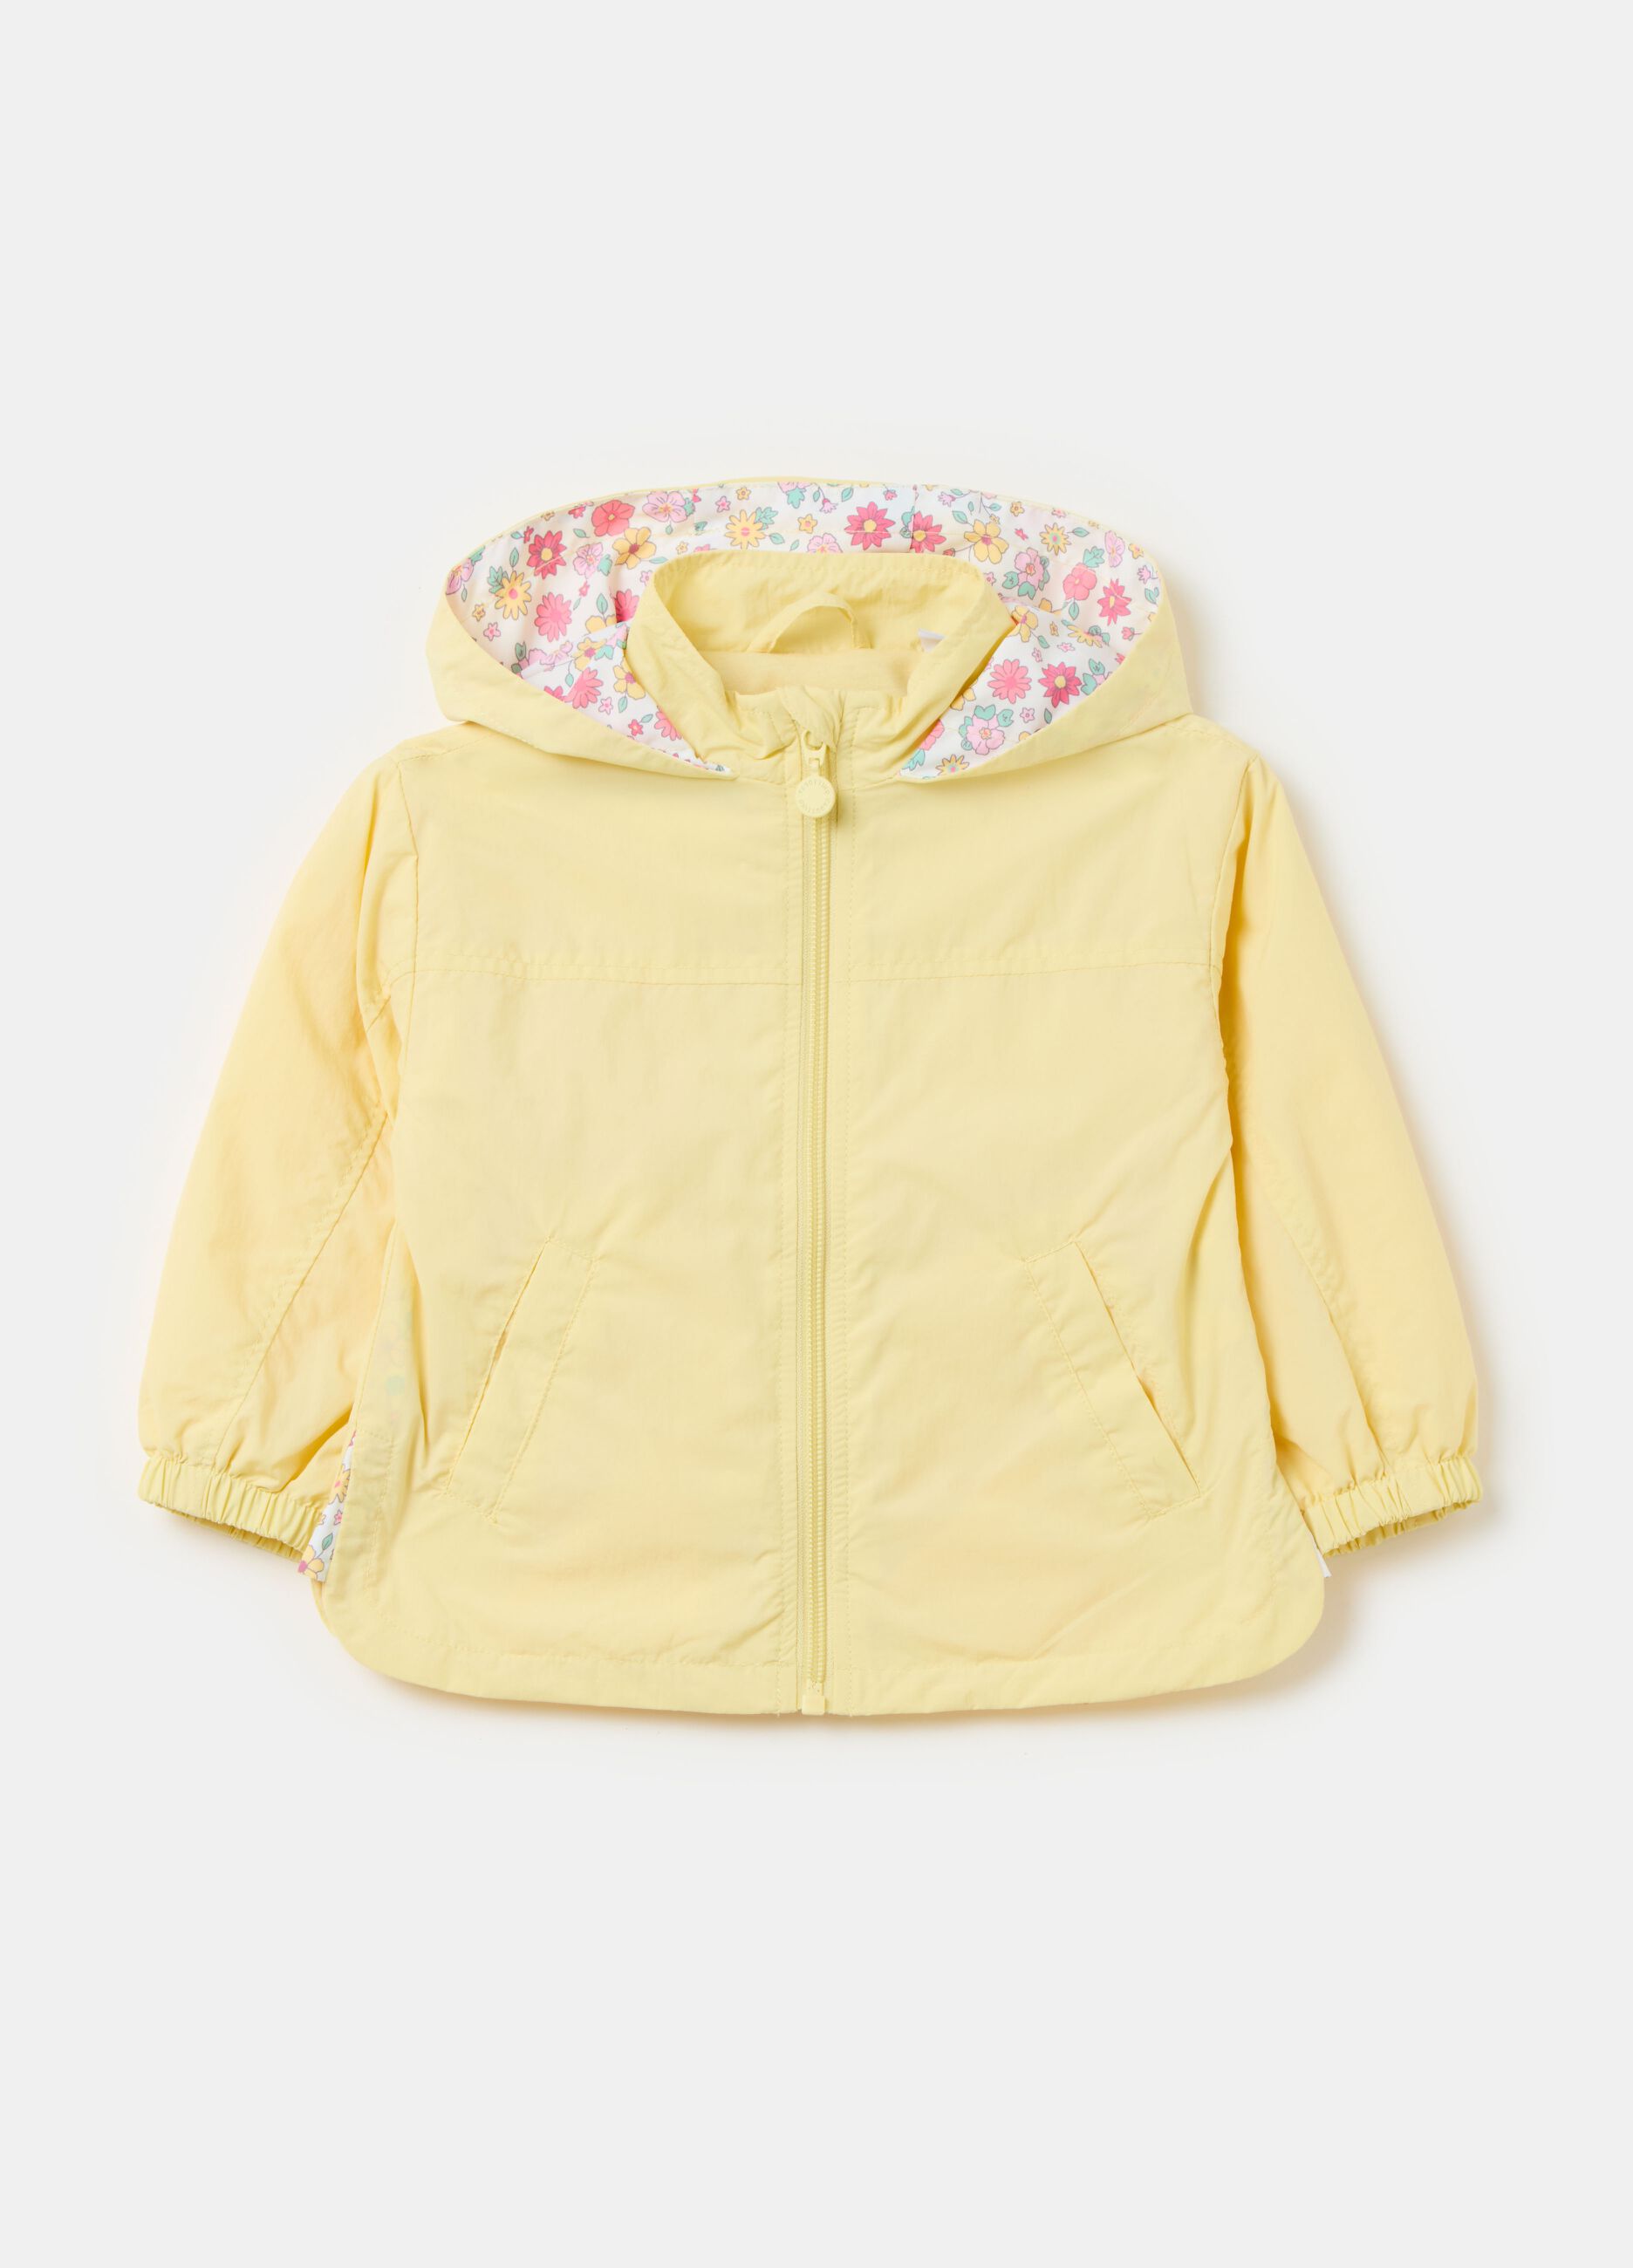 Full-zip jacket with hood